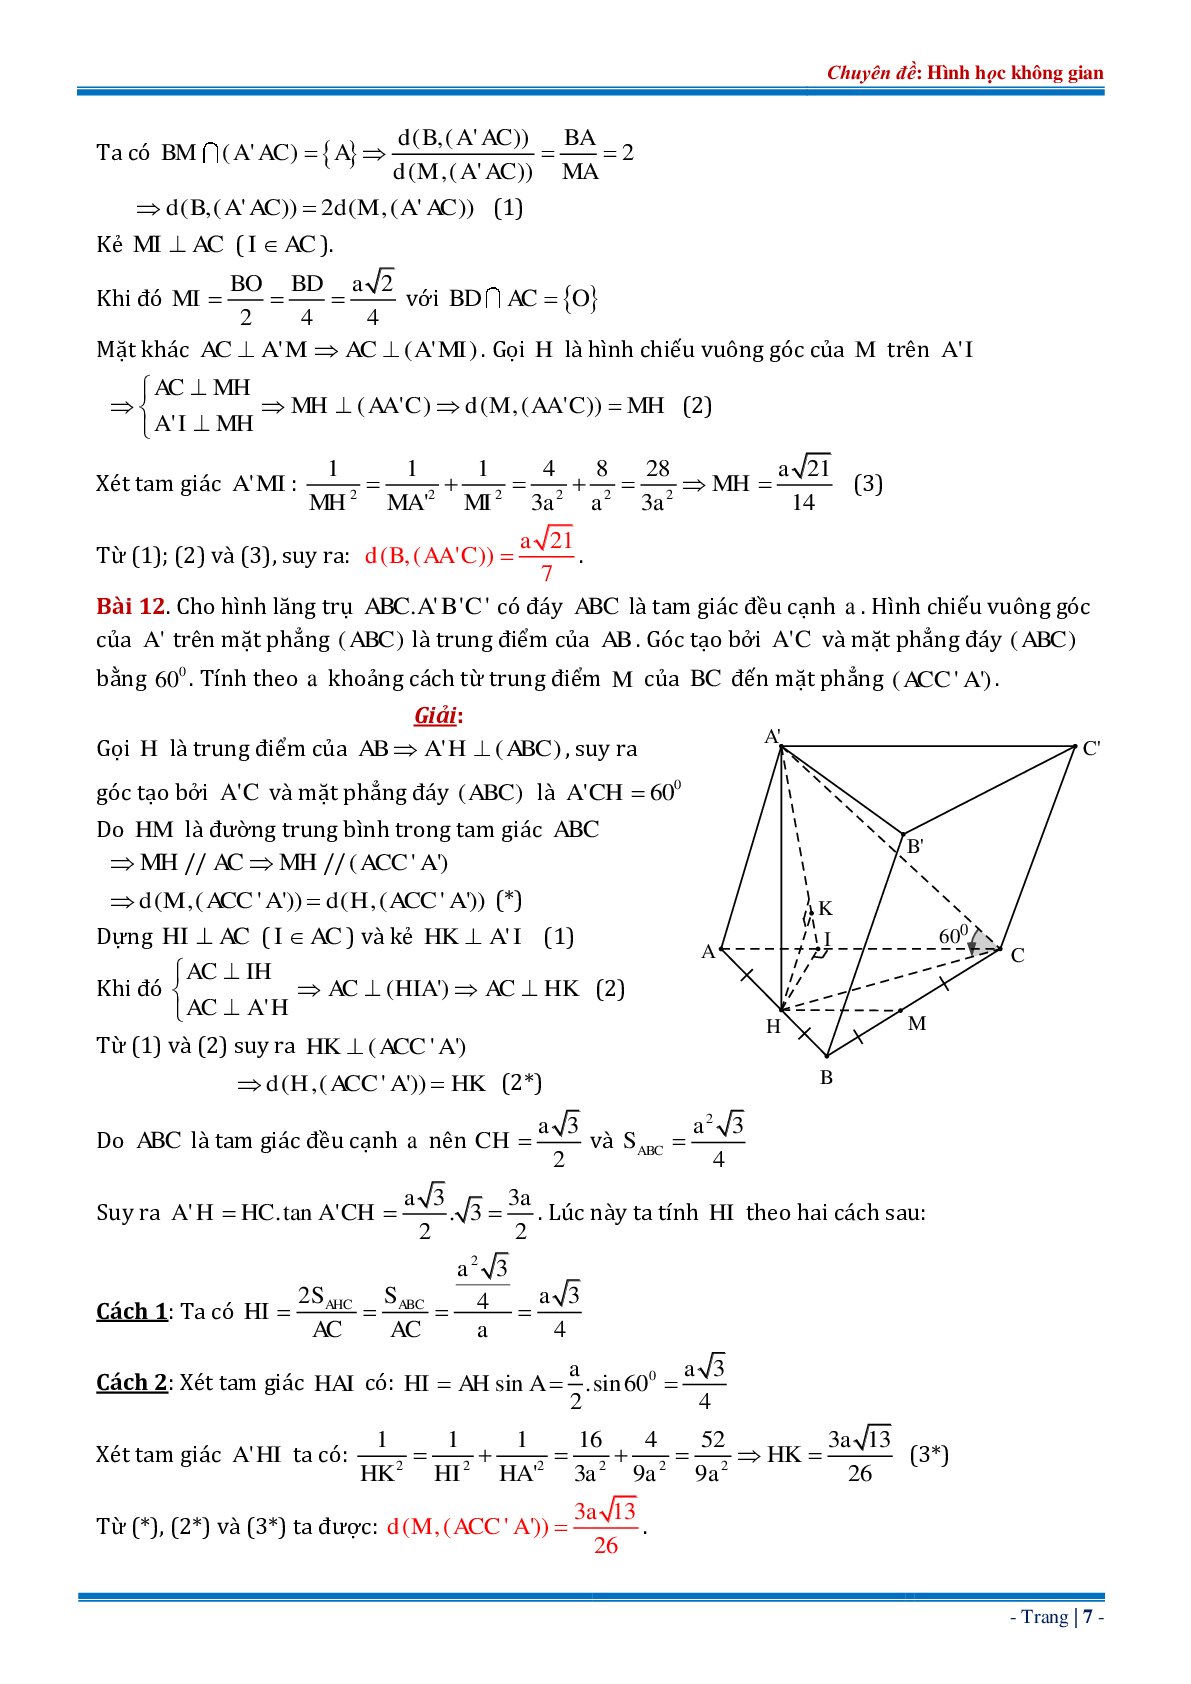 18 bài tập về khoảng cách từ điểm đến mặt phẳng dạng tổng hợp có đáp án chi tiết (trang 7)